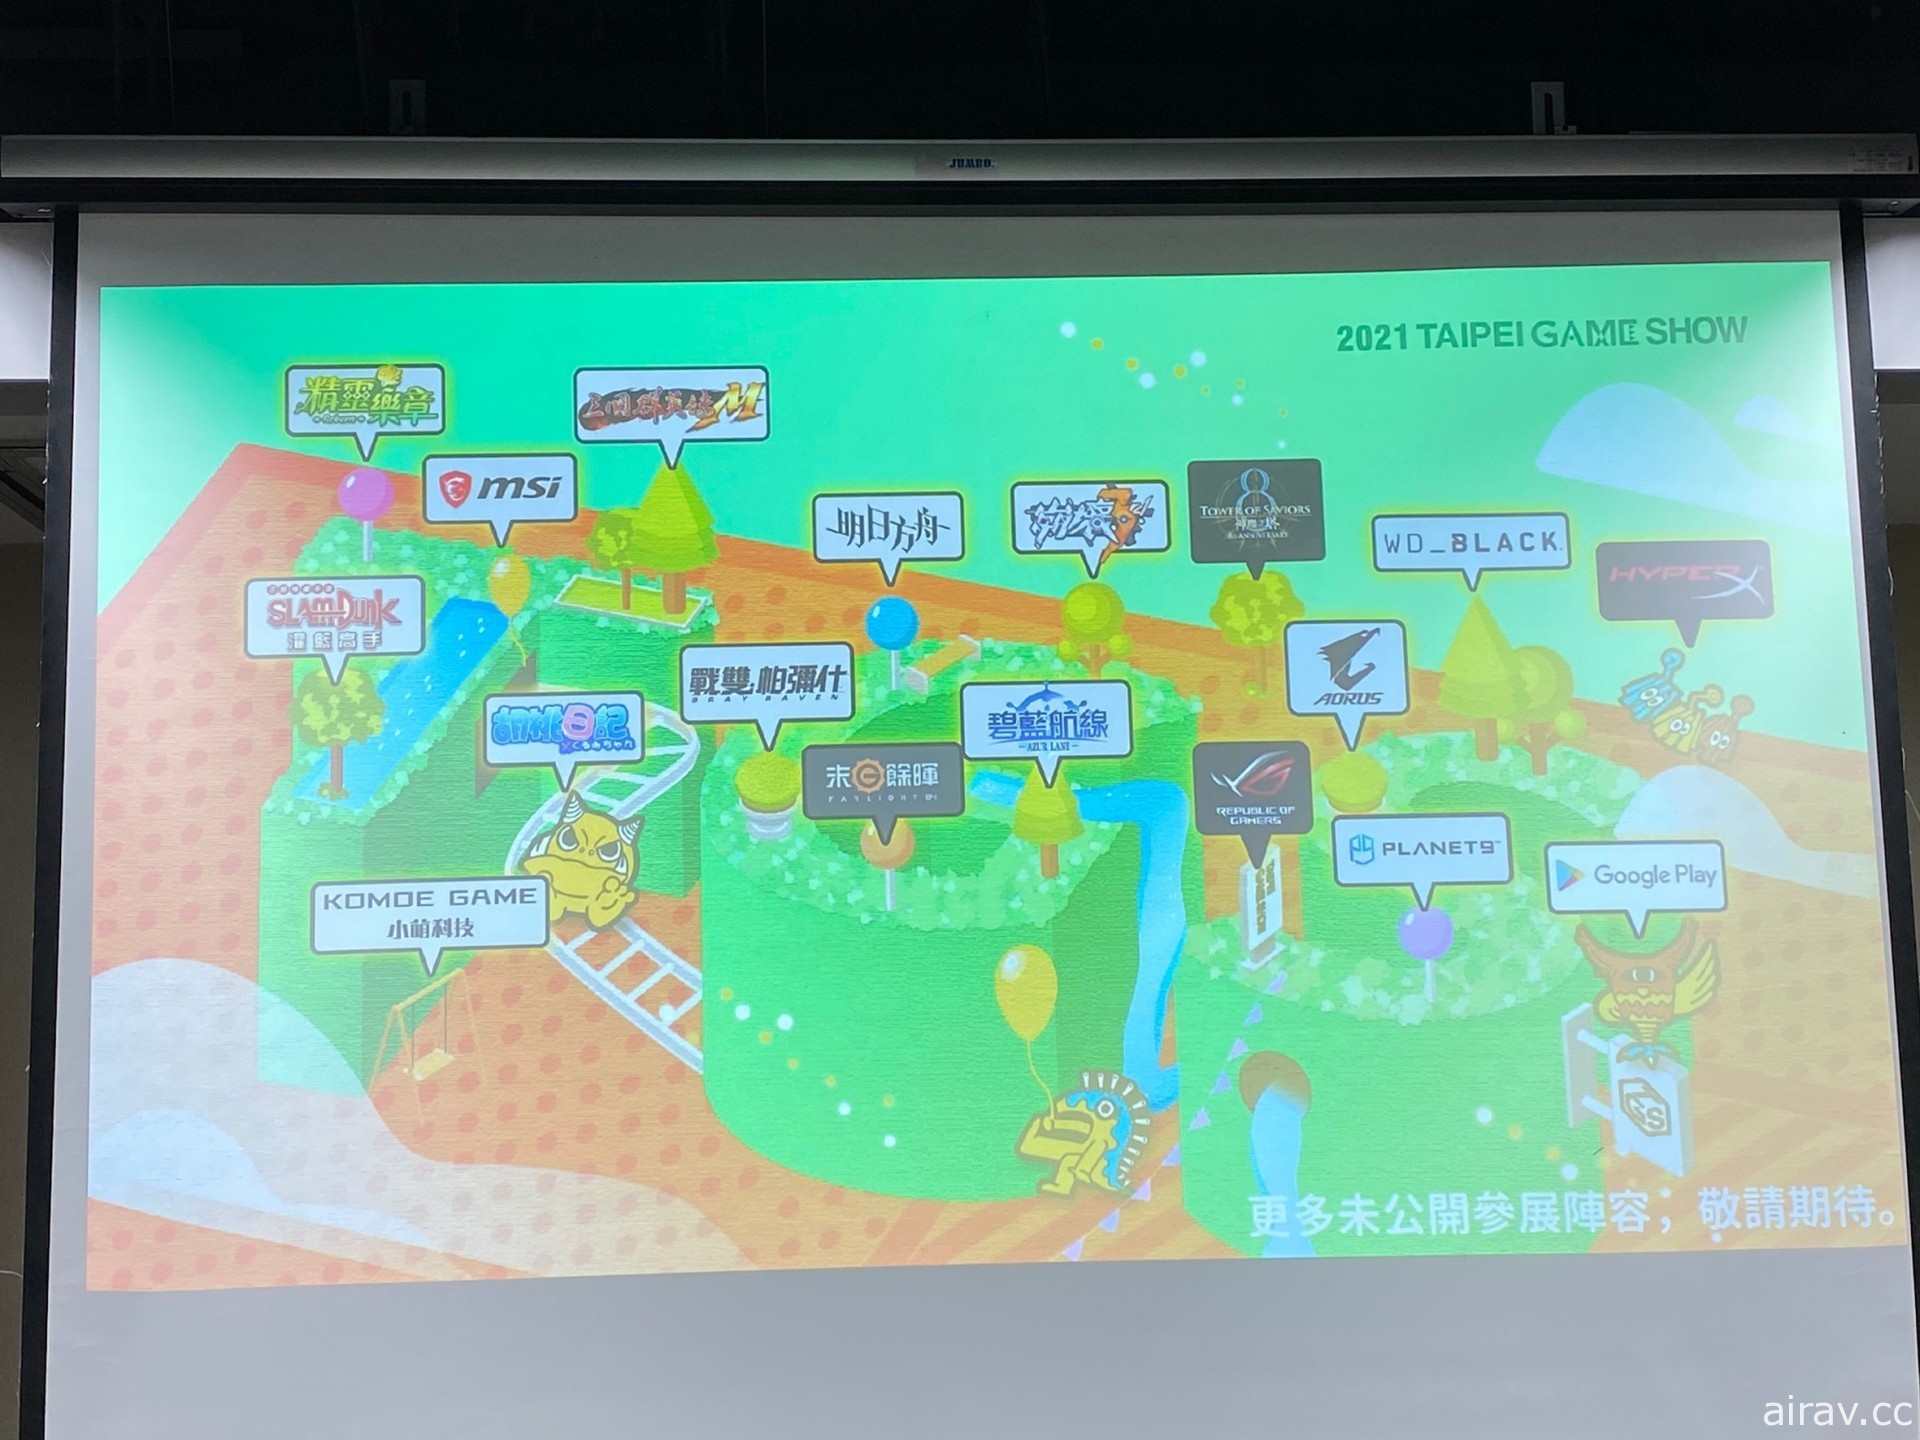 【TpGS 21】疫情升温　Google Play 等部分厂商退出台北电玩展